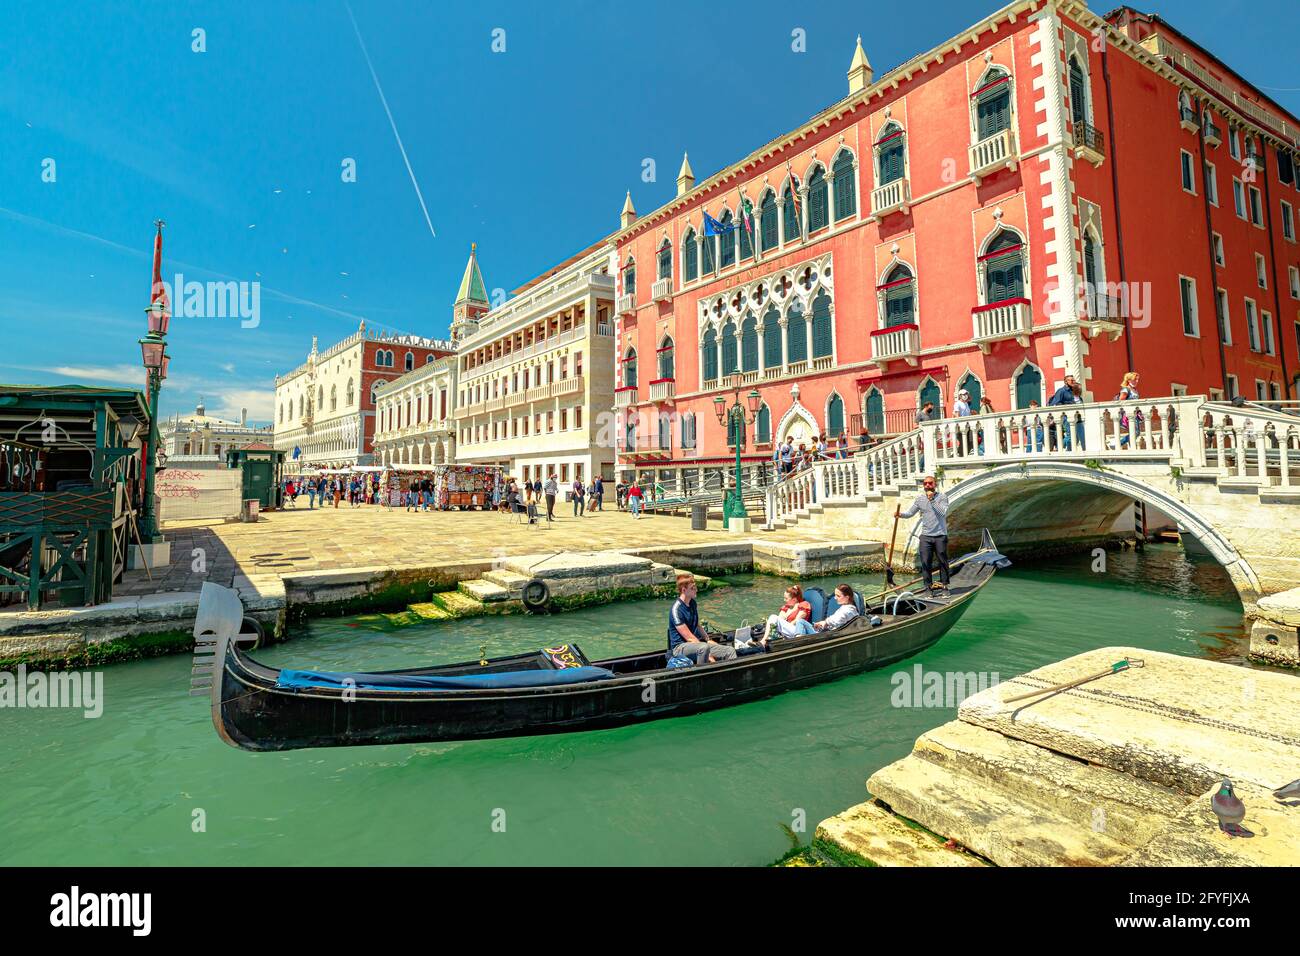 Venise, Italie - 9 mai 2021 : place Saint-Marc avec le palais de Doge. Gondoles avec touristes sur les canaux de Venise avec masques chirurgicaux pour Covid Banque D'Images